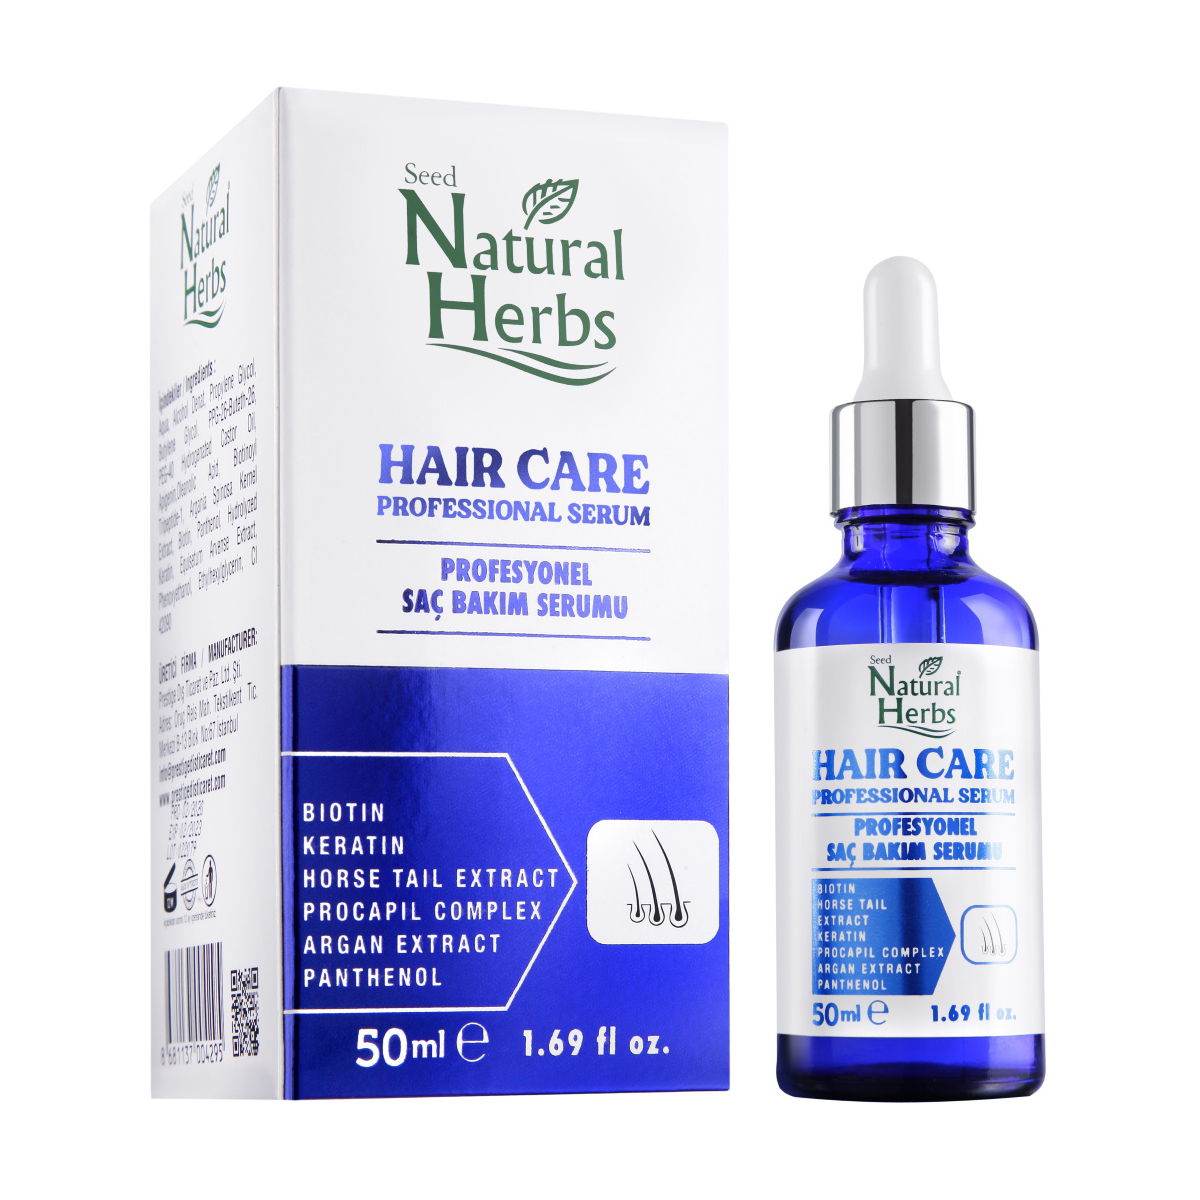 Natural Herbs Hair Care Dökülme Karşıtı Profesyonel Bakım Serumu 50 ml